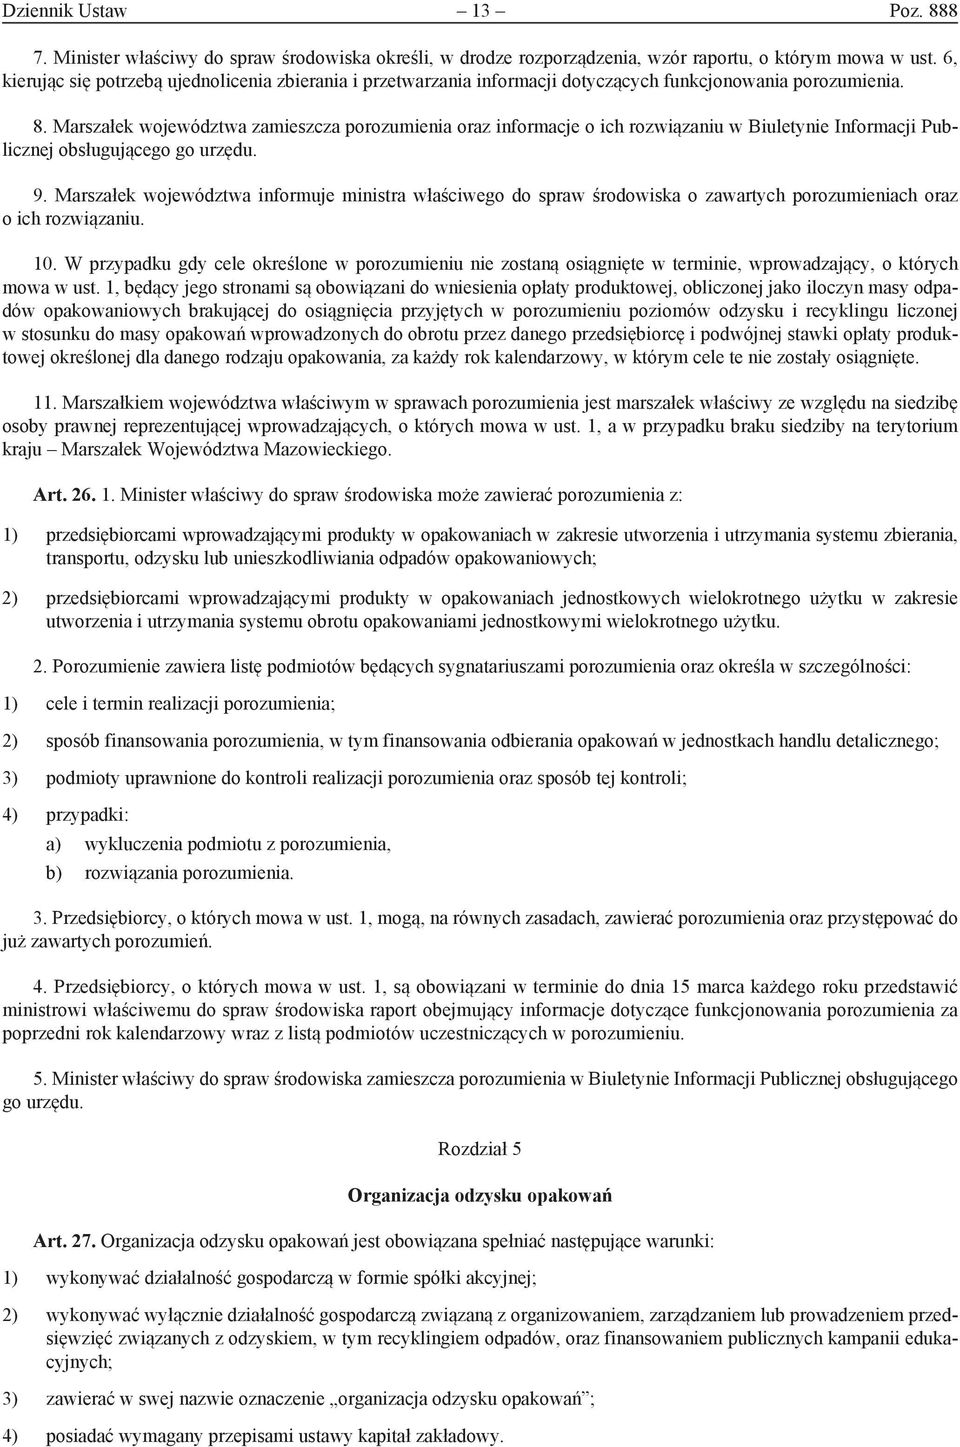 Marszałek województwa zamieszcza porozumienia oraz informacje o ich rozwiązaniu w Biuletynie Informacji Publicznej obsługującego go urzędu. 9.